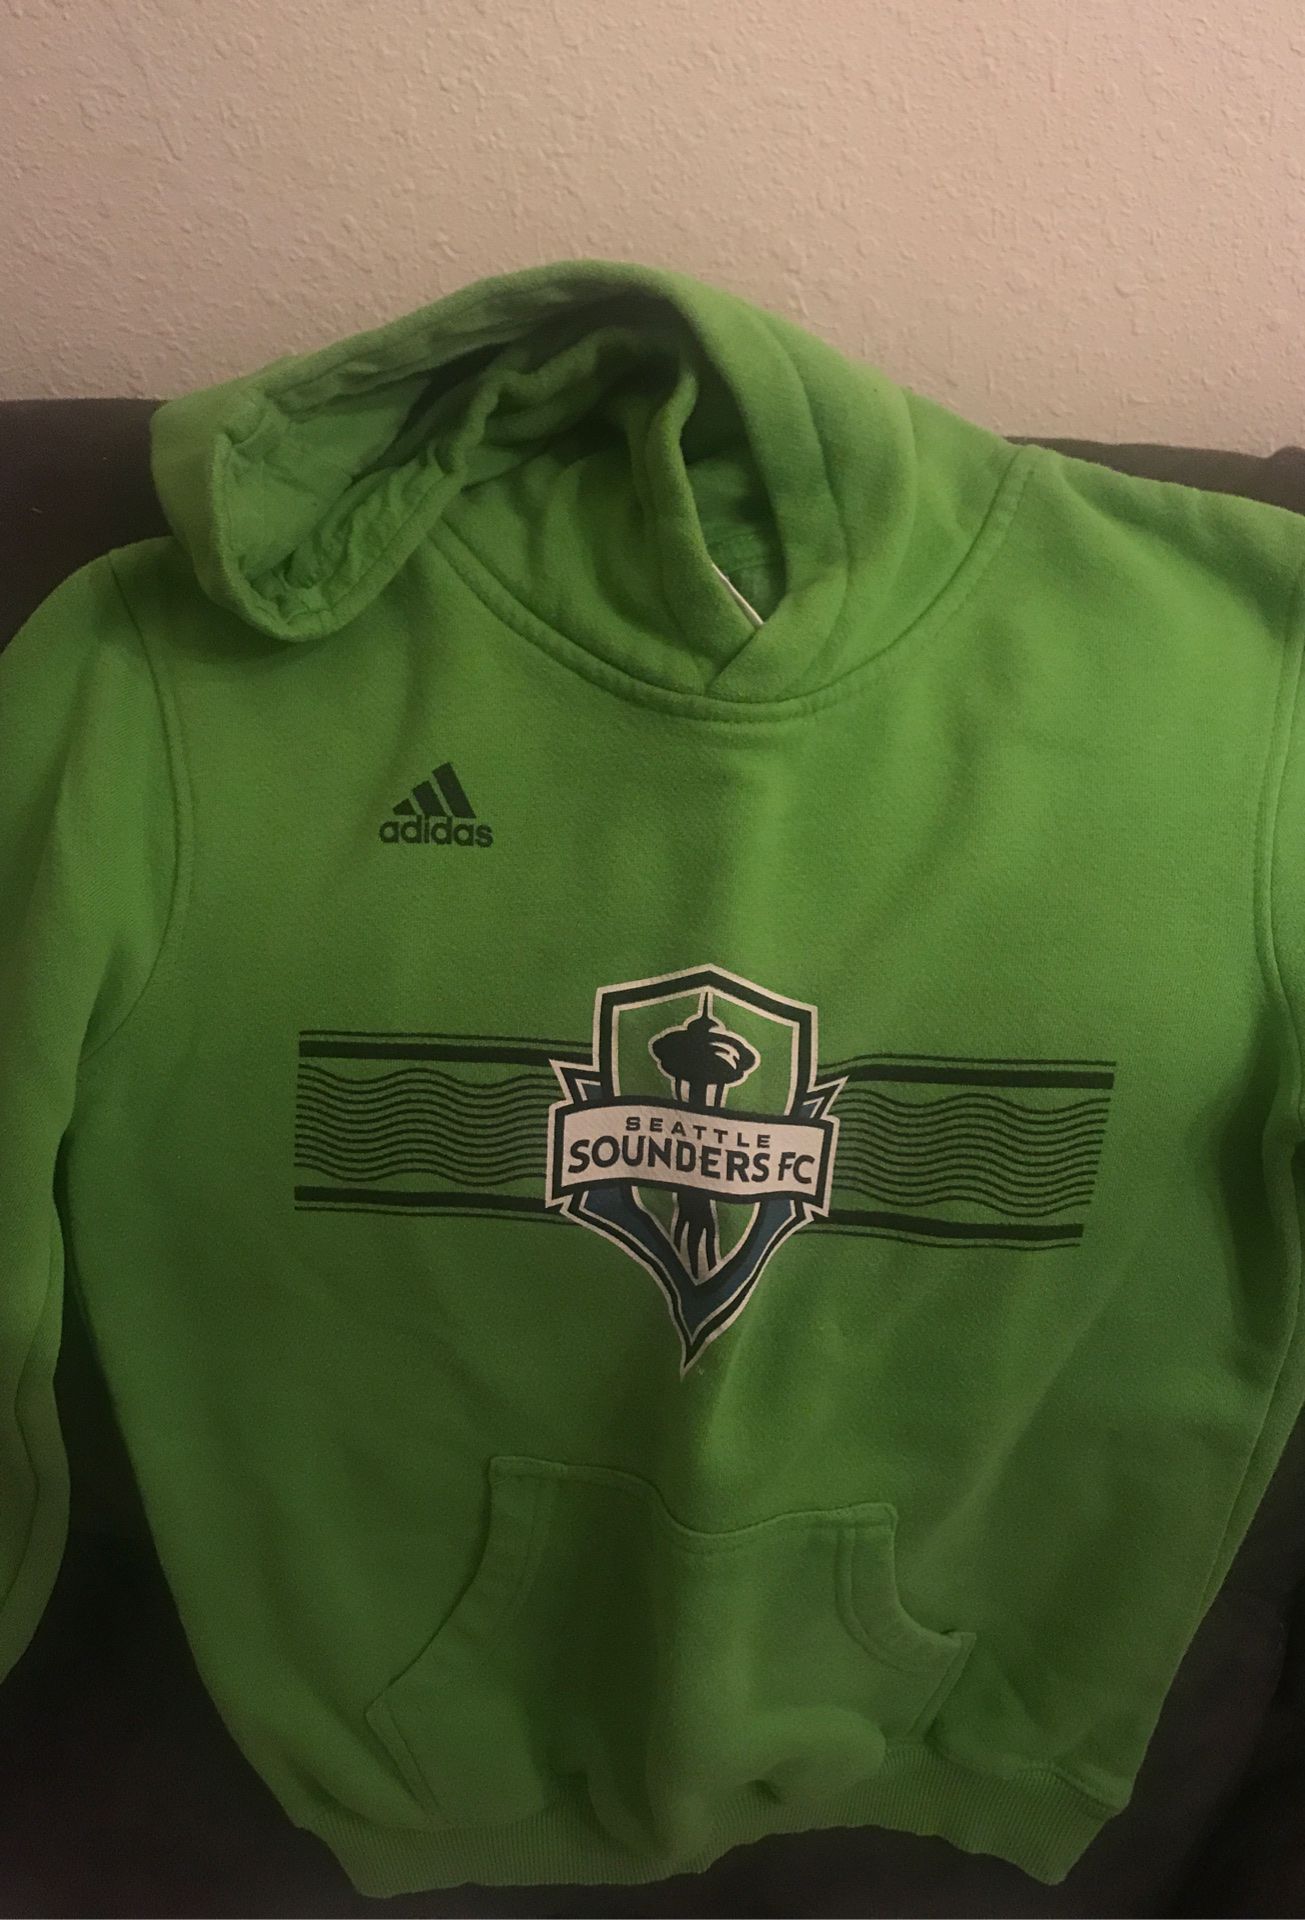 Adidas. Seattle Sounders fc hoodie